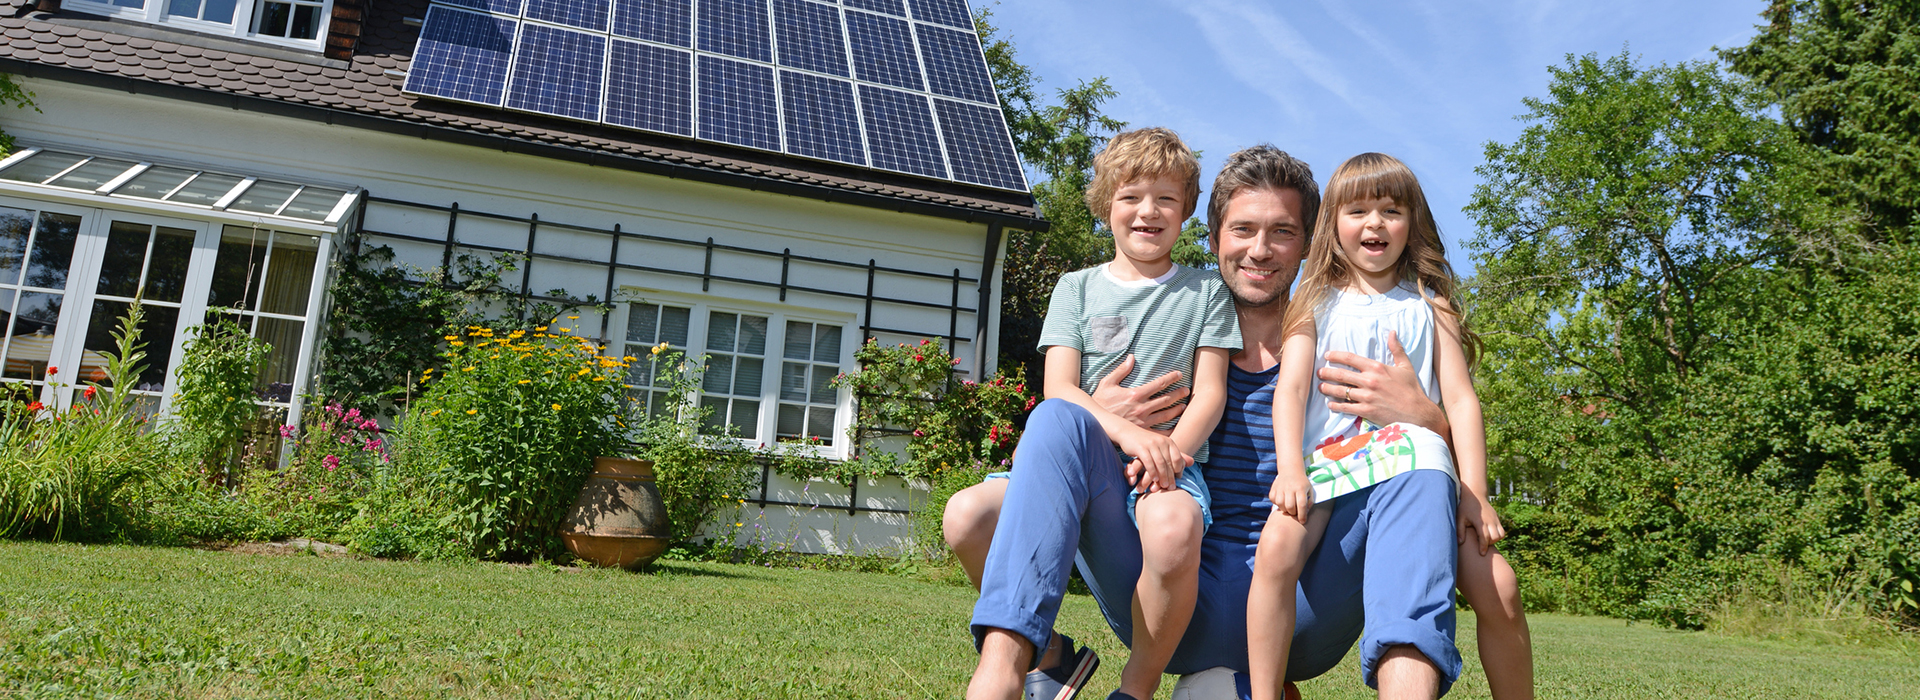 Familie vor Ihrem Haus mit Photovoltaikanlage